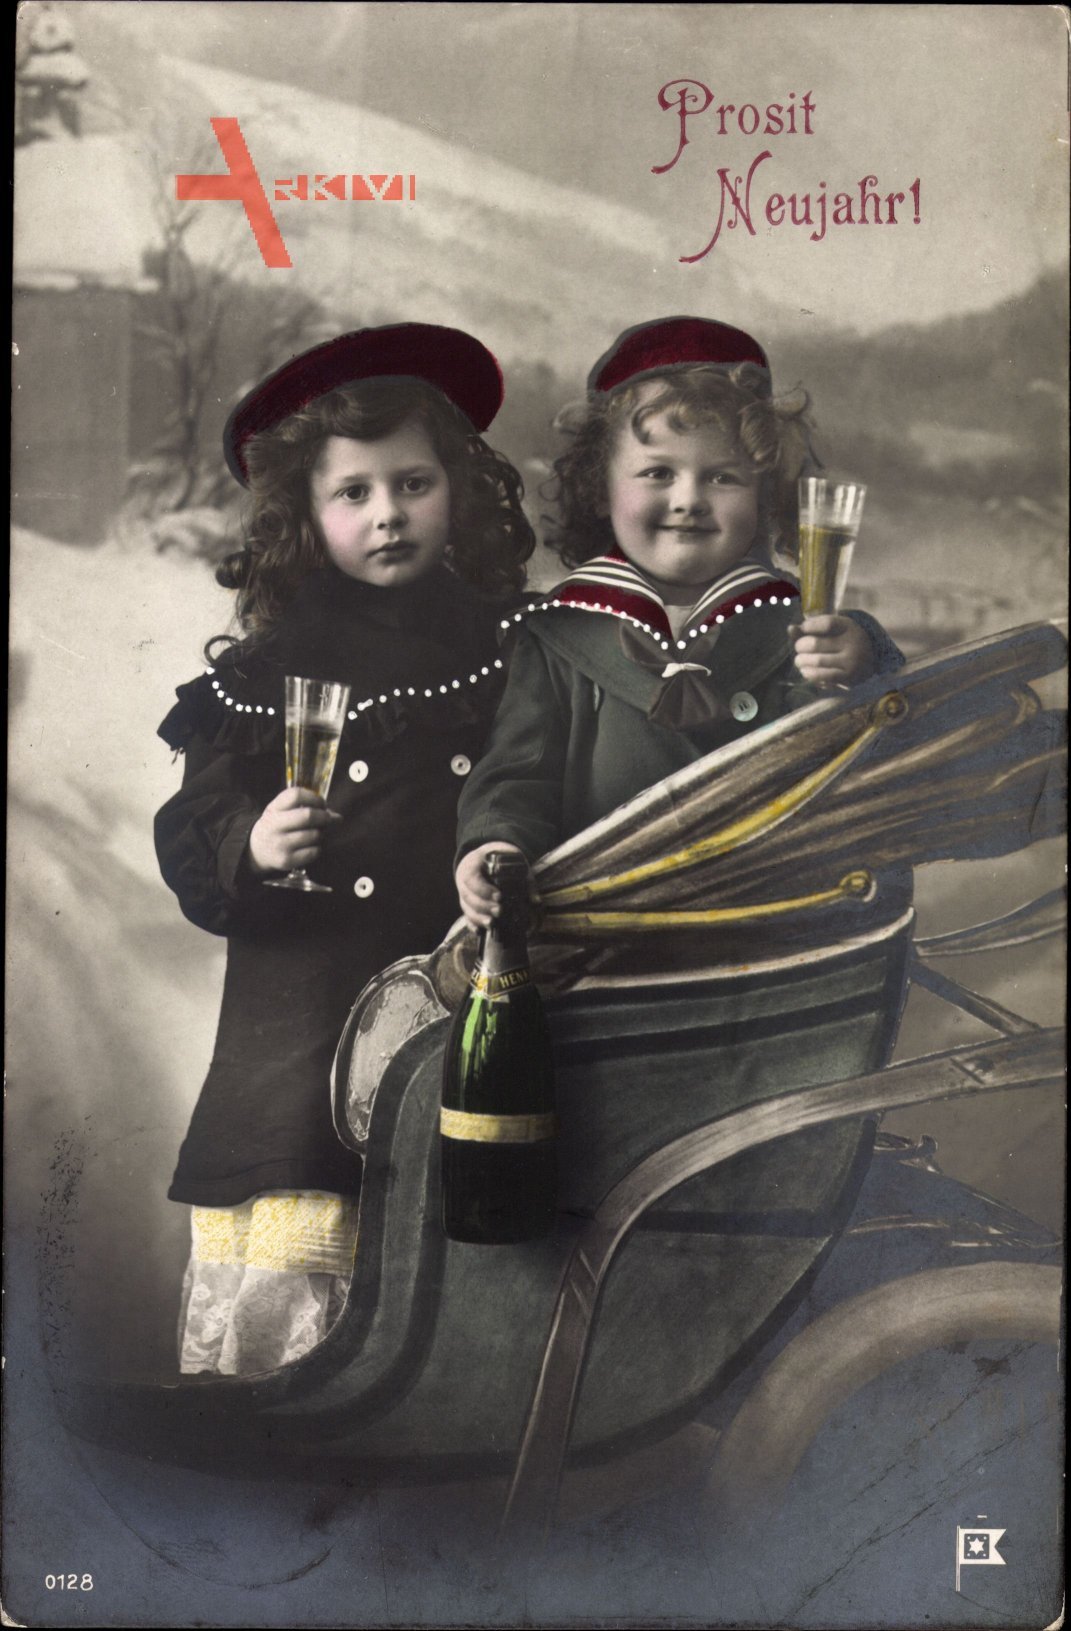 Glückwunsch Neujahr, Zwei Kinder in einer Kutsche, Sektgläser